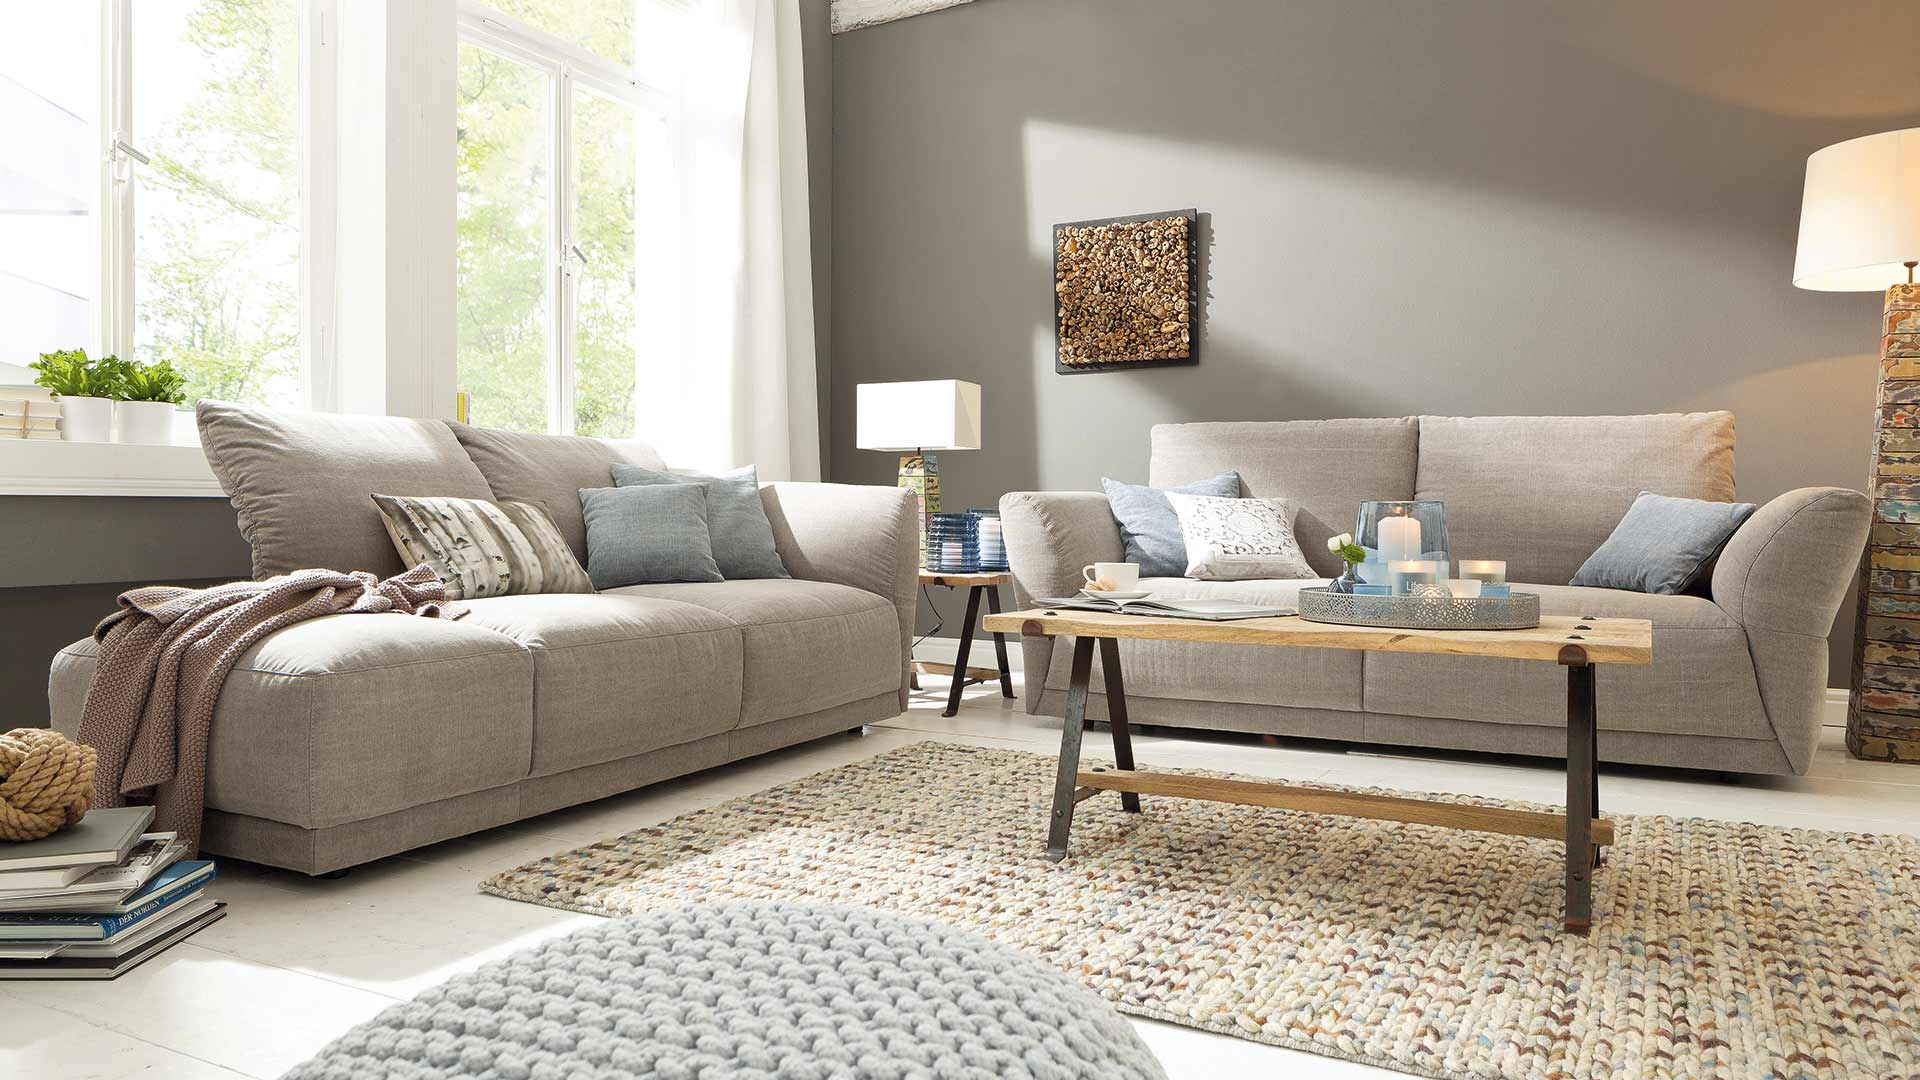 Почистить диван из рогожки в домашних условиях